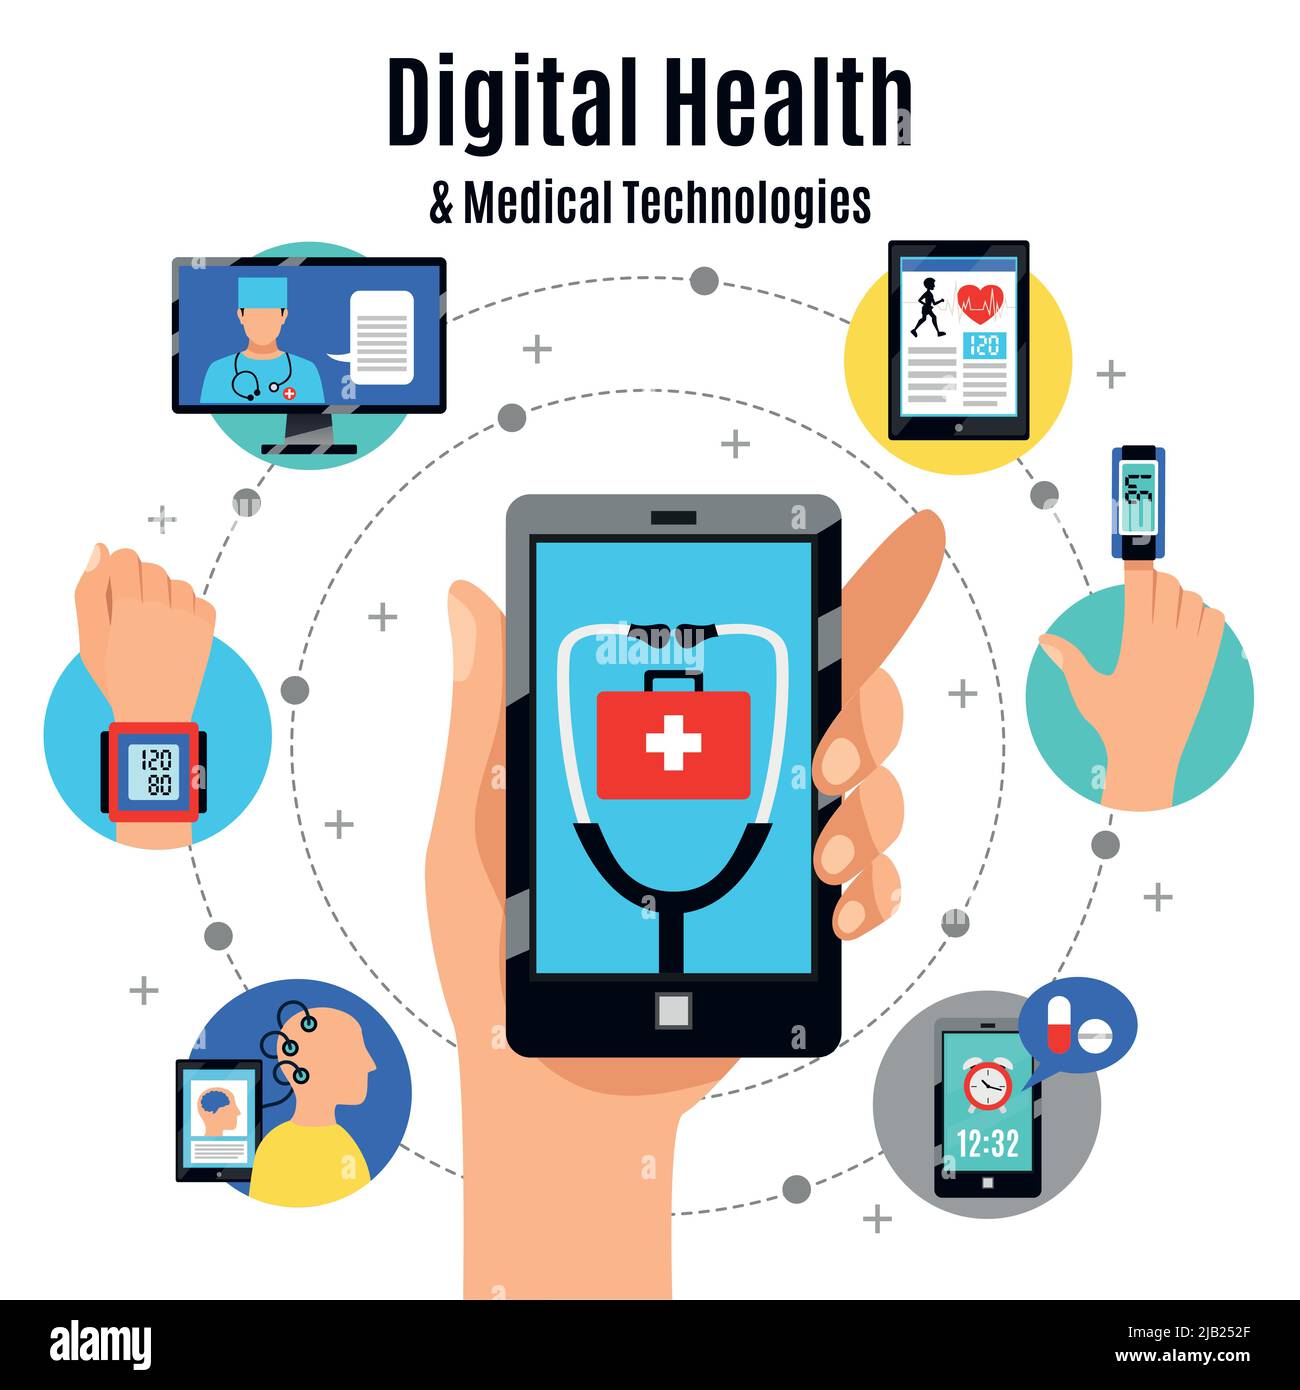 Digitale Lösungen für das Gesundheitswesen mit elektronischen Geräten flaches Plakat mit Mobiltelefon-Touchscreen, medizinischen Apps, Vektordarstellung Stock Vektor